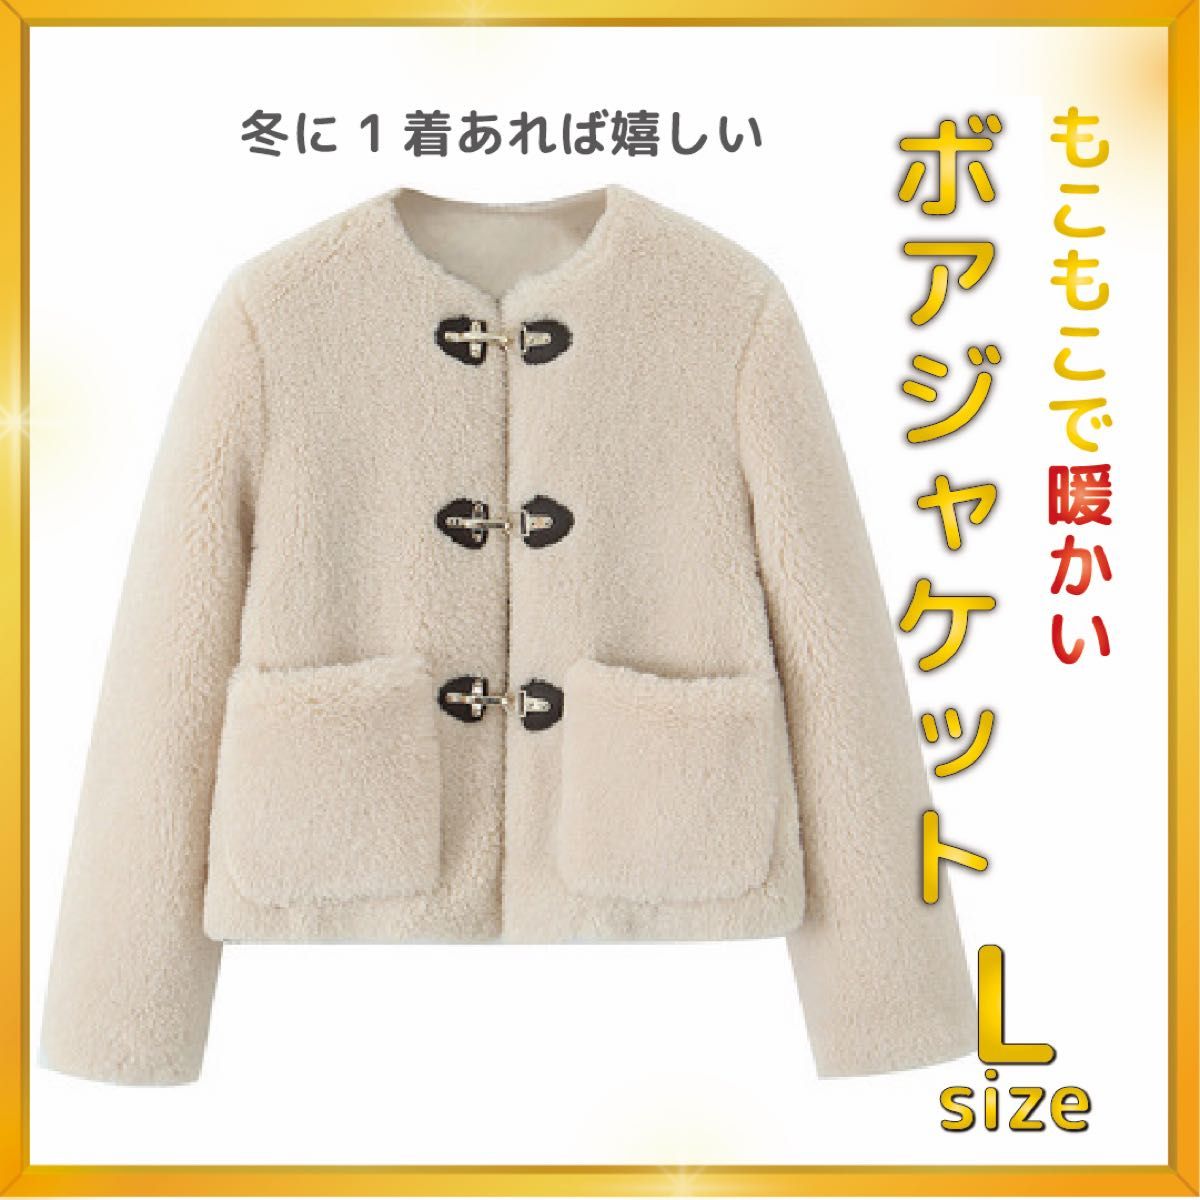 【☆大人気☆】【Lサイズ】ジャケット 暖かい オシャレ 可愛い Lサイズ